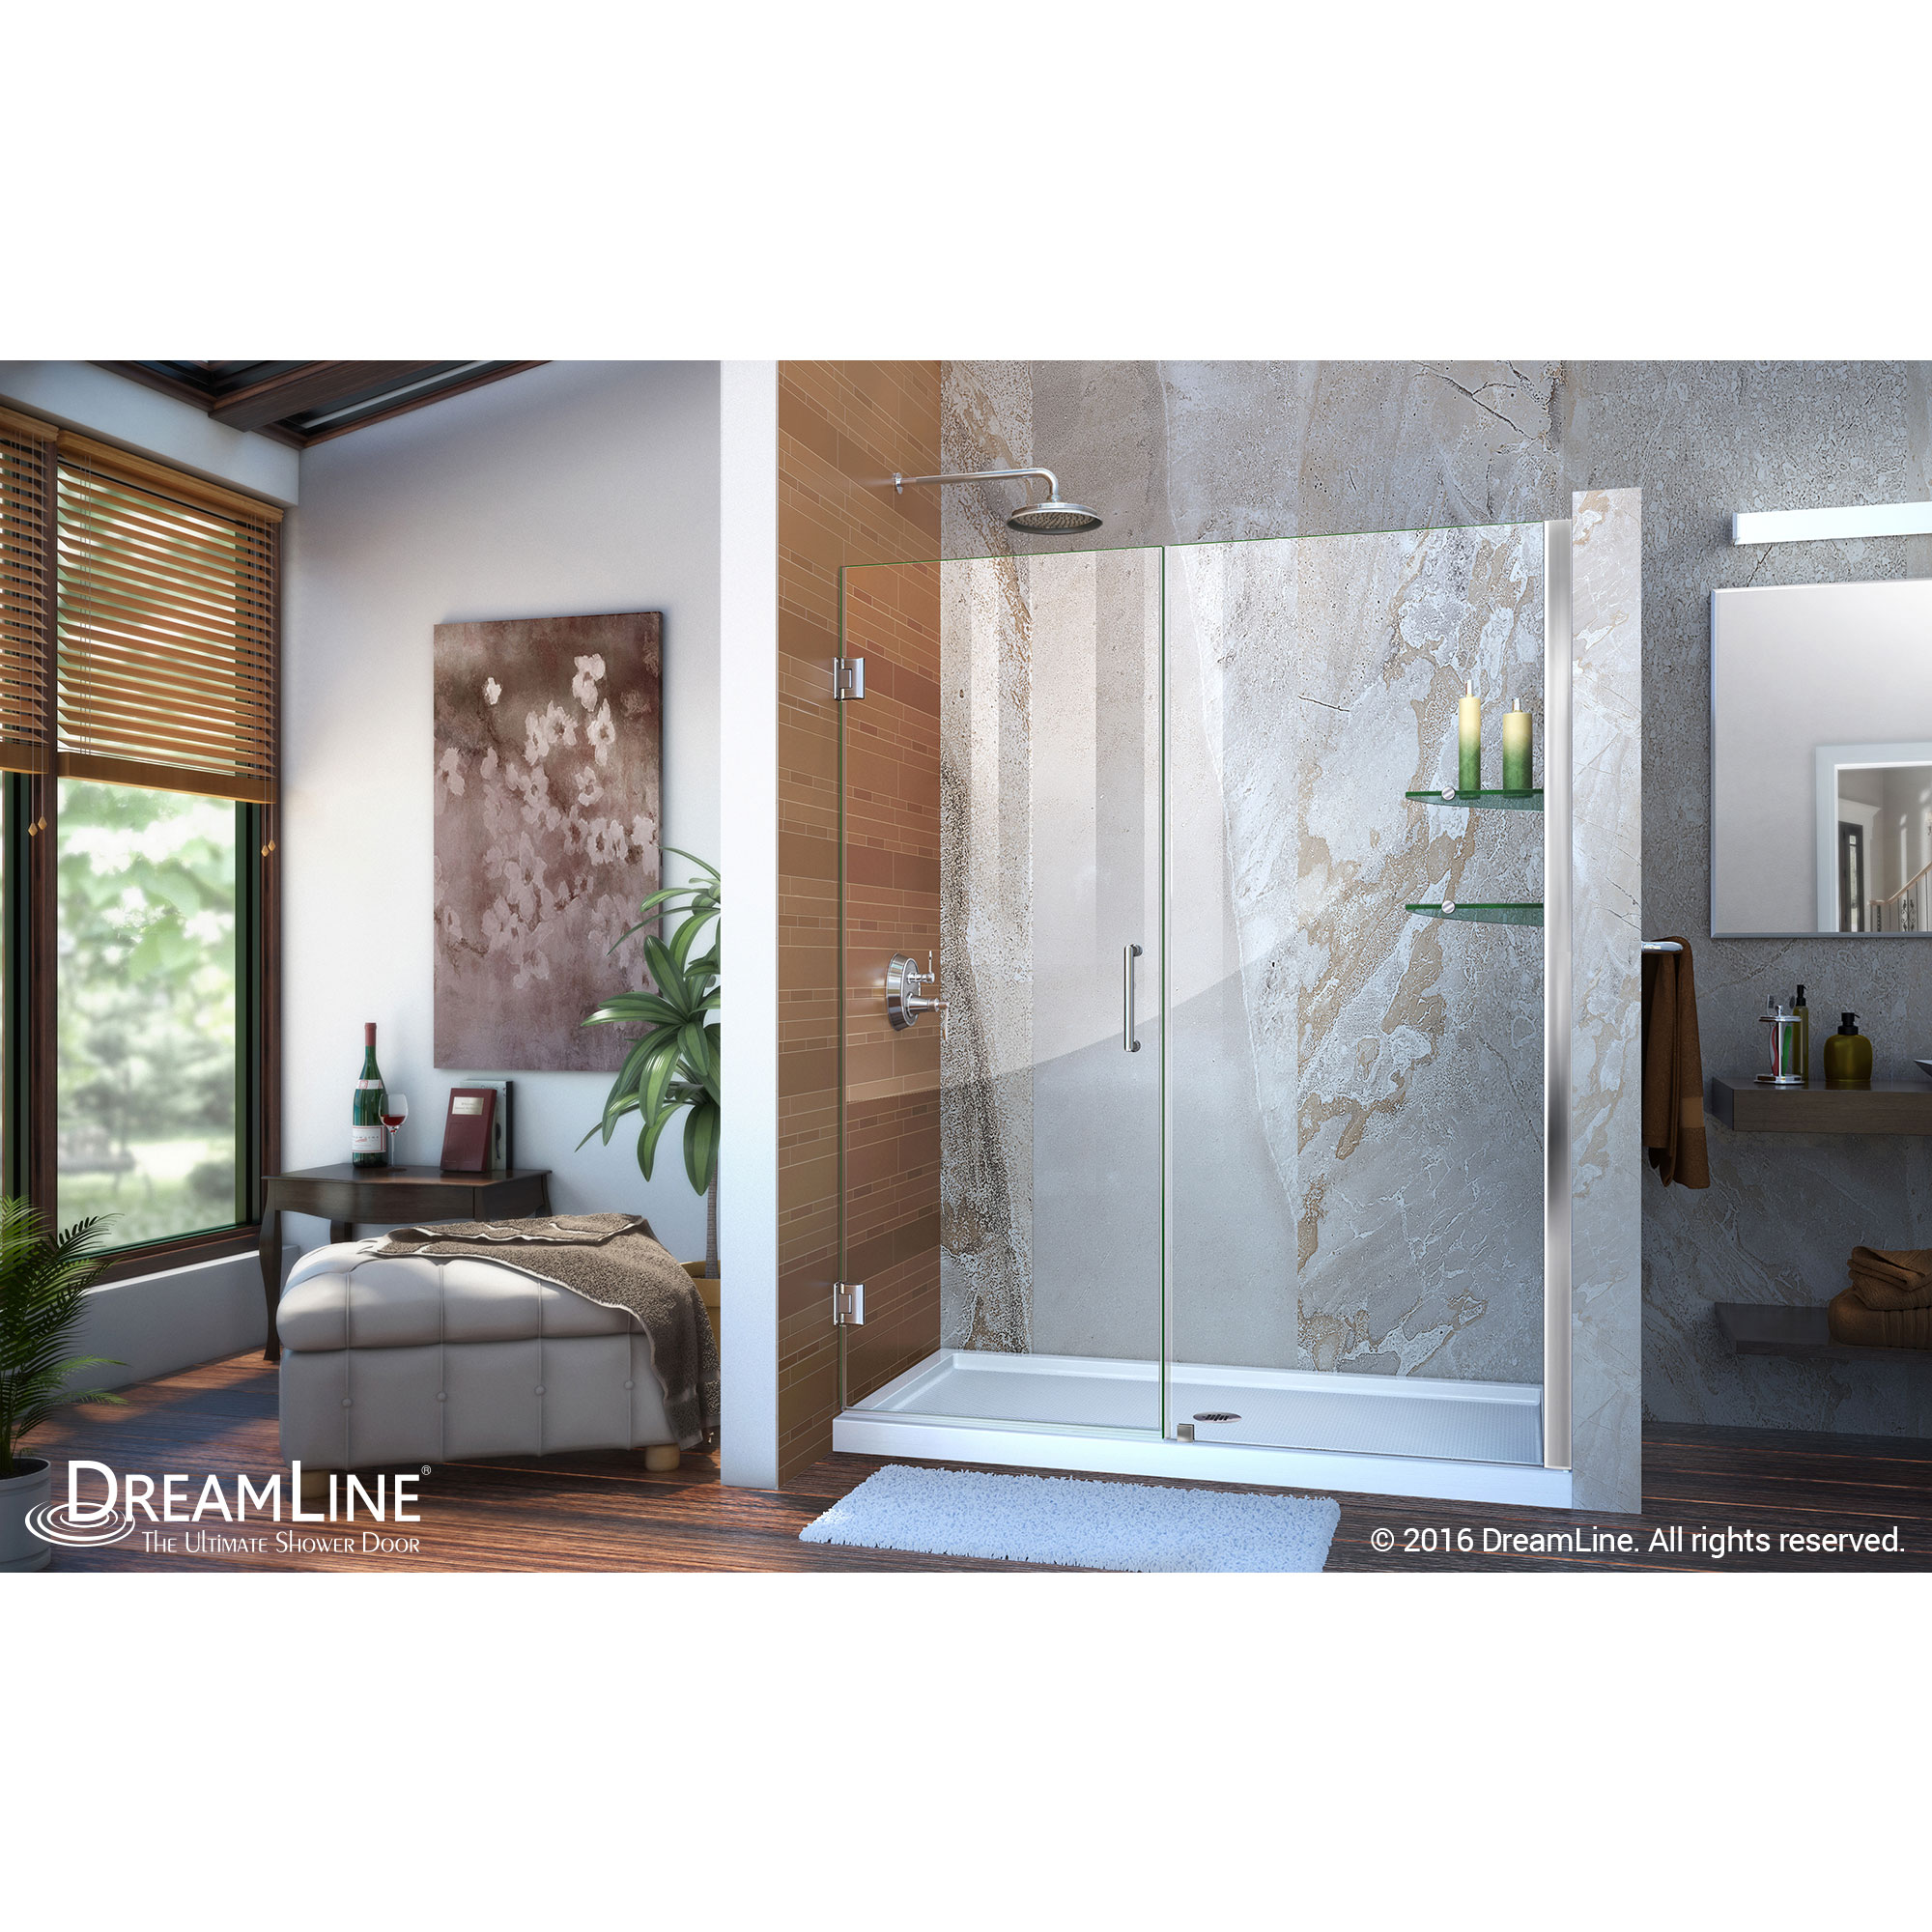 Unidoor 56 to 57" Frameless Hinged Shower Door, Clear 3/8" Glass Door, Chrome